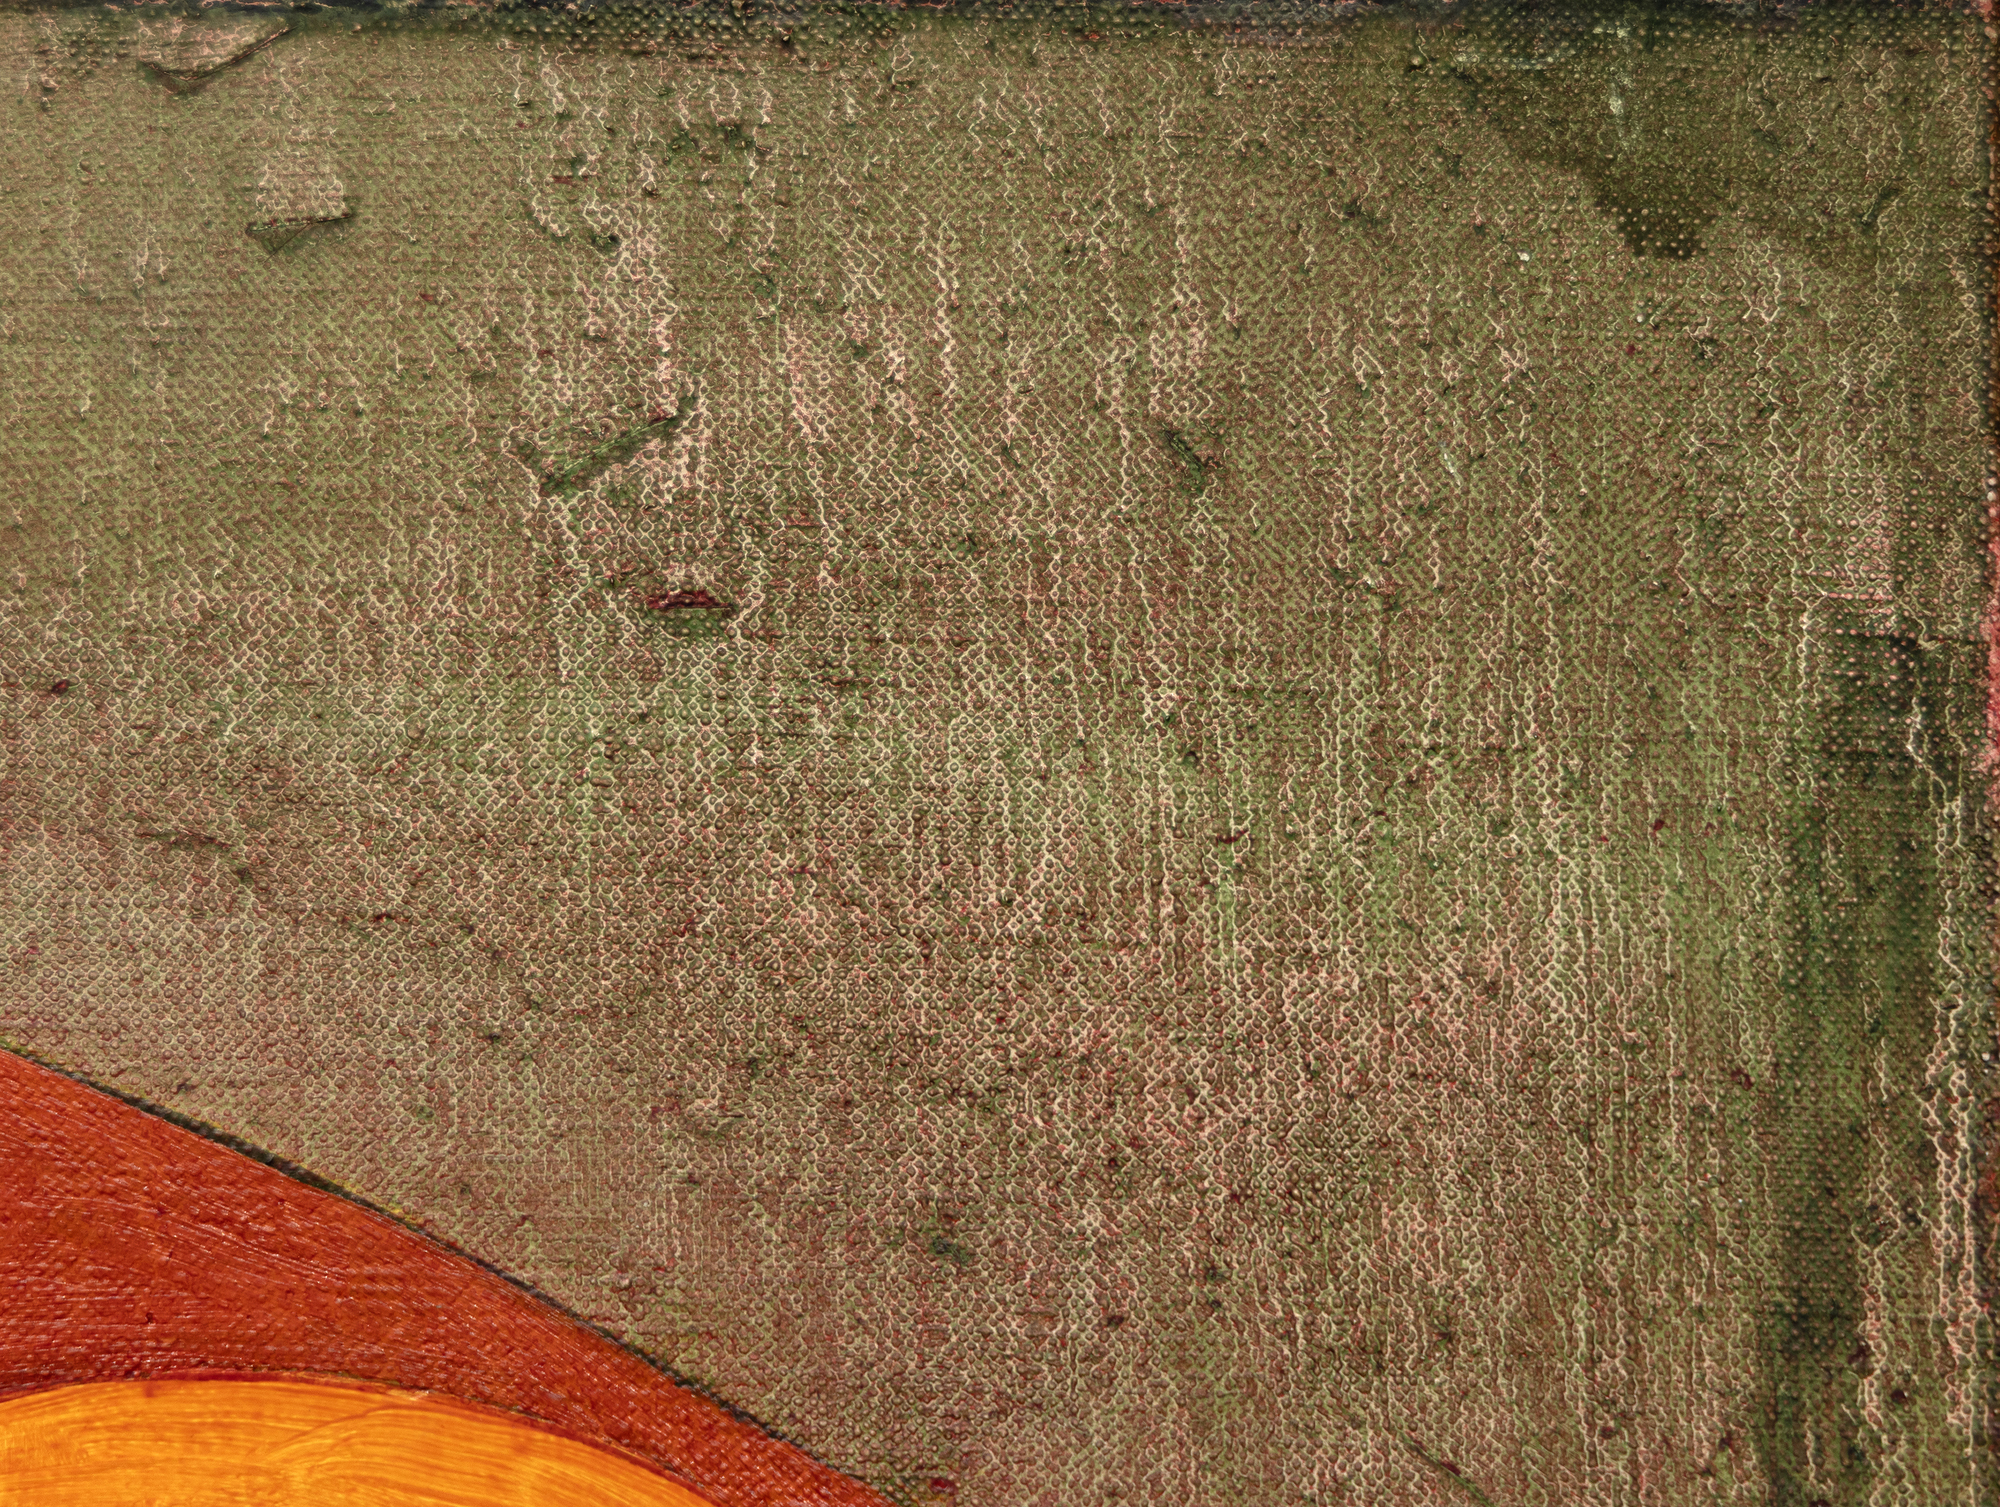 Der 1944 geborene Thomas Nozkowski schuf kleine, farbenprächtige Gemälde, die die gegensätzlichen Einflüsse der Abstrakten Expressionisten und Bauhaus-Flüchtlinge widerspiegeln, bei denen er an der Cooper Union studierte. Er verwendet einen kleinen Pinsel und schabt und reibt die Farbe auf eine Art und Weise ab, die sich im fertigen Werk niederschlägt. Er entwickelte ein unverwechselbares, breit gefächertes Vokabular, in dem er biomorph anmutende geometrische Formen in unterschiedlichen Farbschemata und einer Vielzahl von Assoziationen einsetzt: von Fliesenböden über Zellcluster bis hin zu Architektur und Weltraum. Oft sind sie aus seinen eigenen Erinnerungen und Erfahrungen destilliert. Nozkowski kommentierte dieses spezielle Gemälde (Ohne Titel, 1994) mit den Worten, dass es seine Faszination für die mythologischen Szenen widerspiegelt, die auf die Kassettentruhen der Renaissance gemalt sind. Er bezeichnete es als das beste von drei oder vier 15" x 30" großen Tafeln dieser Serie. Nozkowski wurde viele Jahre lang von der Pace Gallery betreut. Er ist 2019 verstorben.